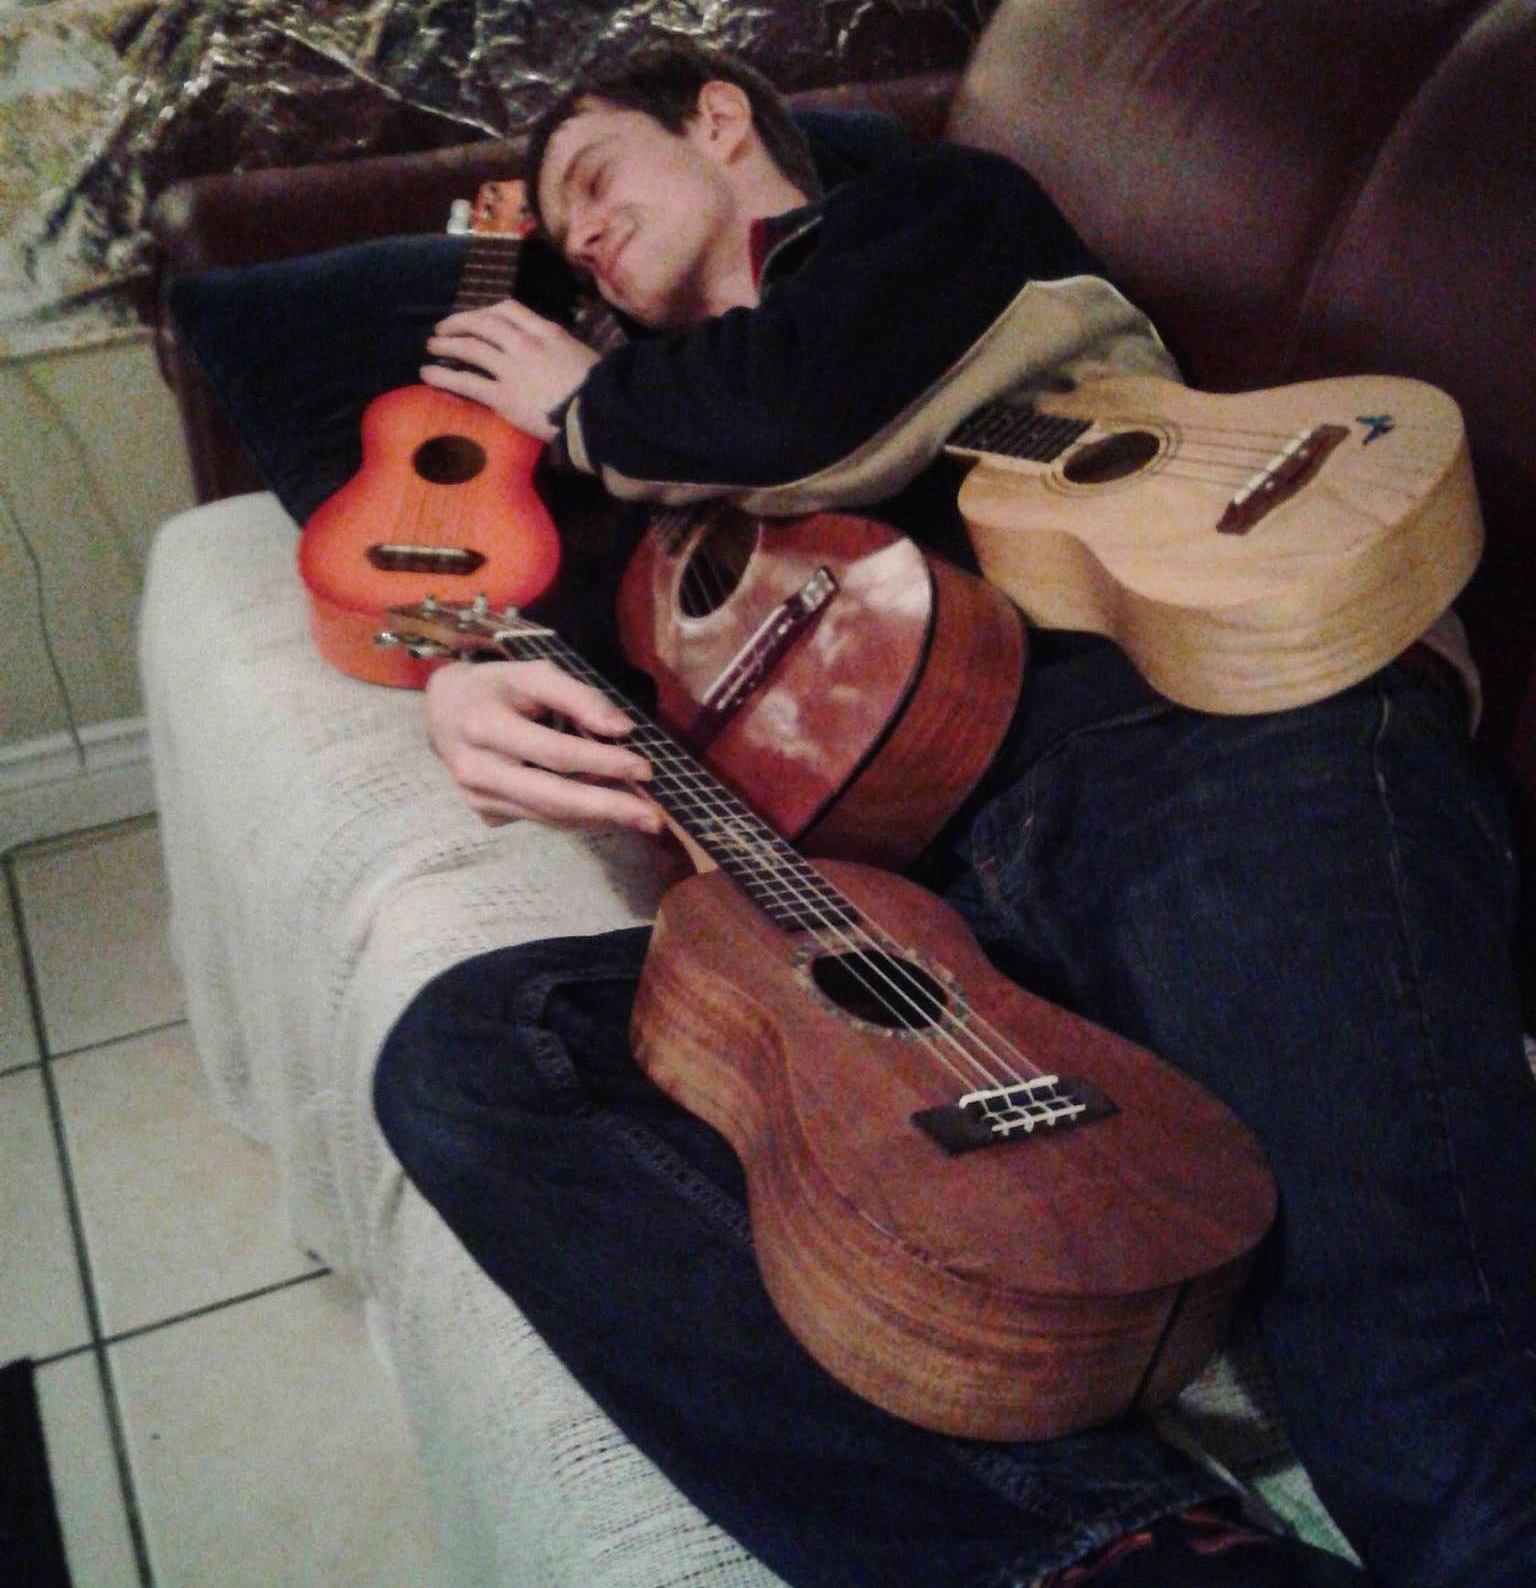 Mark cuddling with four ukuleles